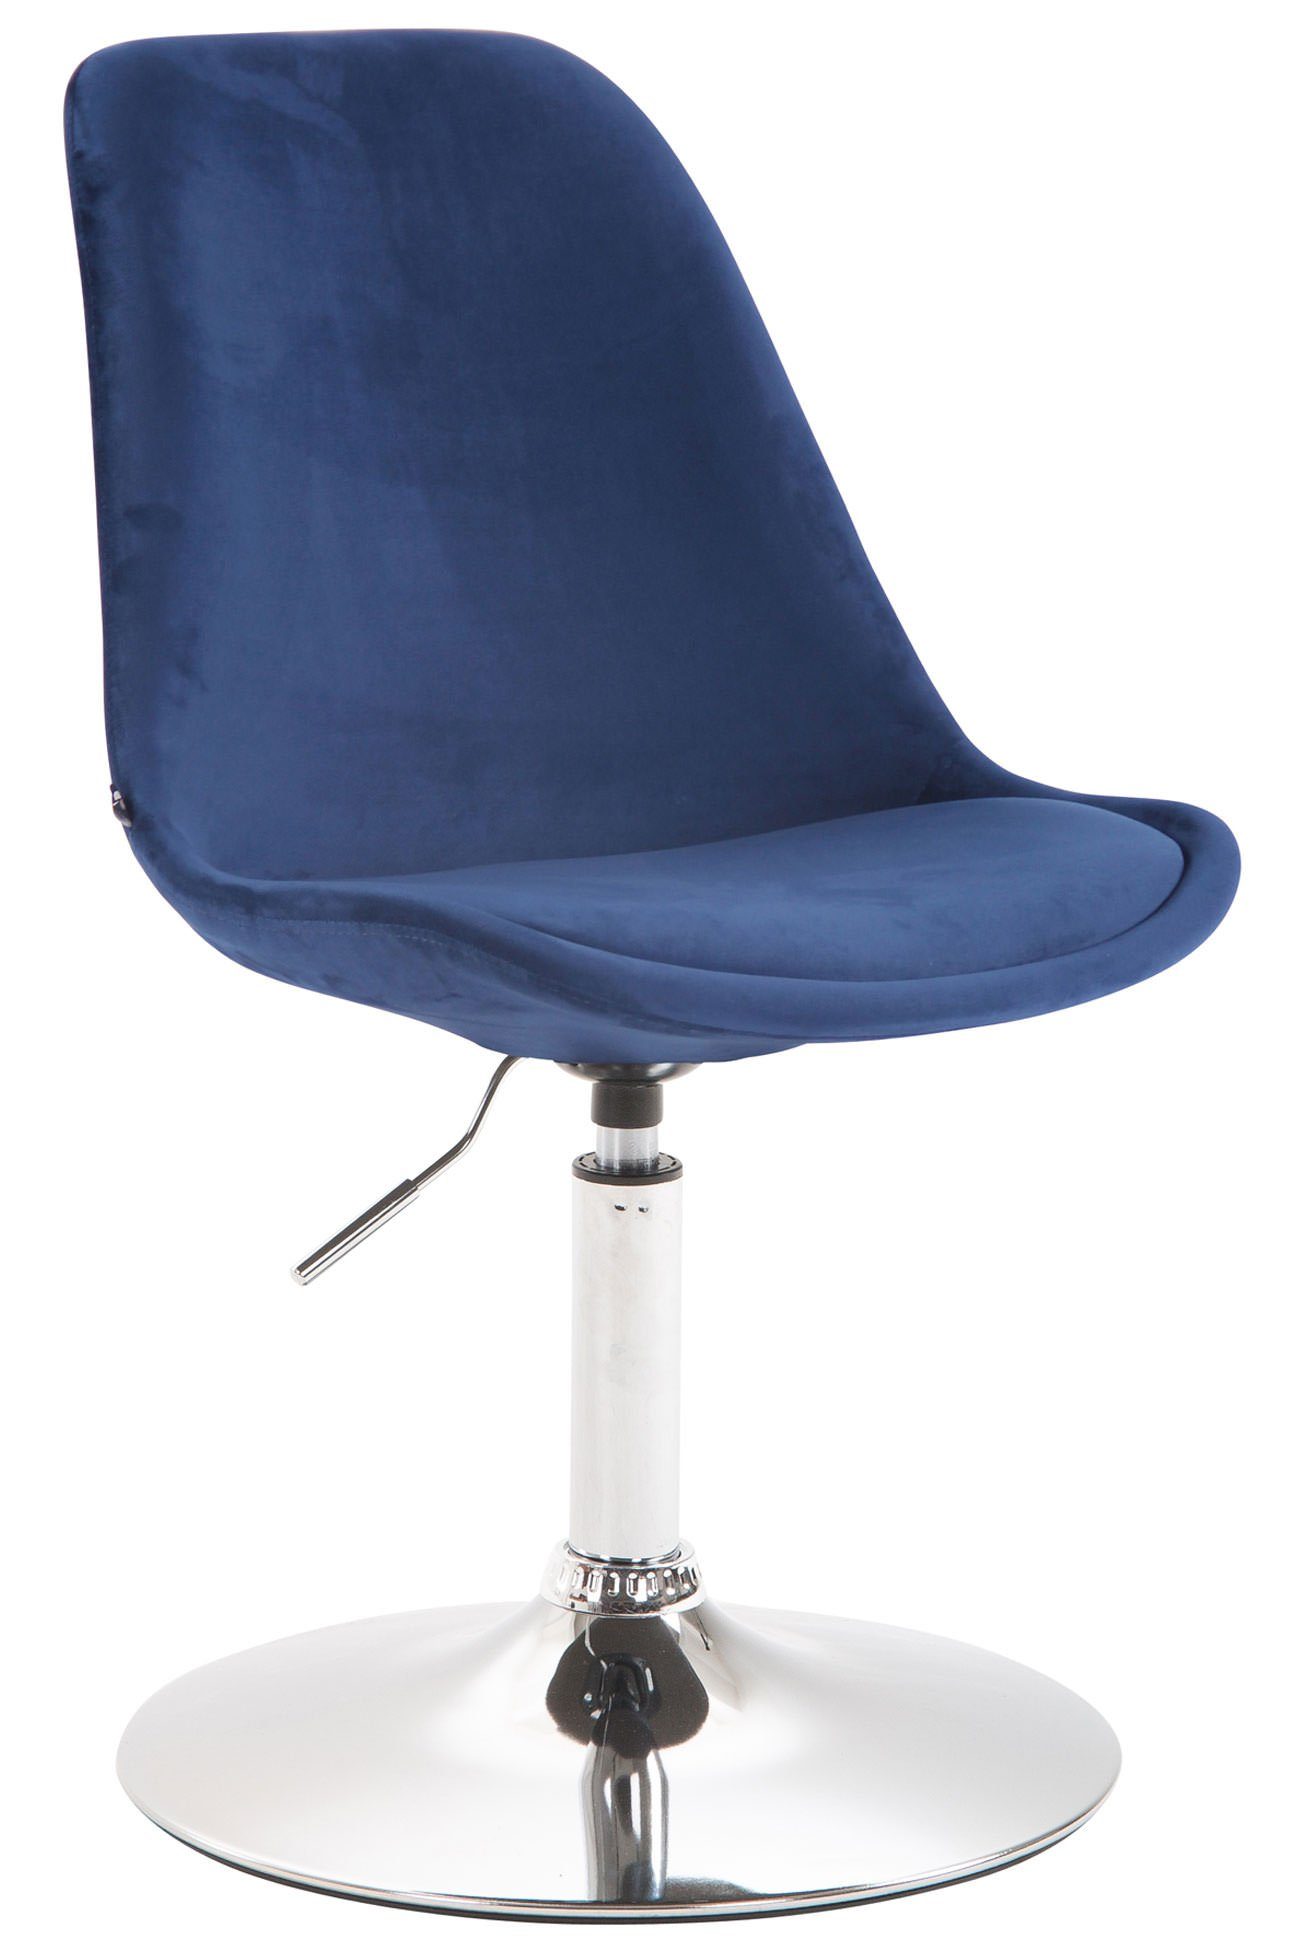 TPFLiving Esszimmerstuhl Mavic mit hochwertig gepolsterter Sitzfläche - Konferenzstuhl (Küchenstuhl - Esstischstuhl - Wohnzimmerstuhl - Polsterstuhl), Gestell: Metall chrom - Sitzfläche: Samt blau